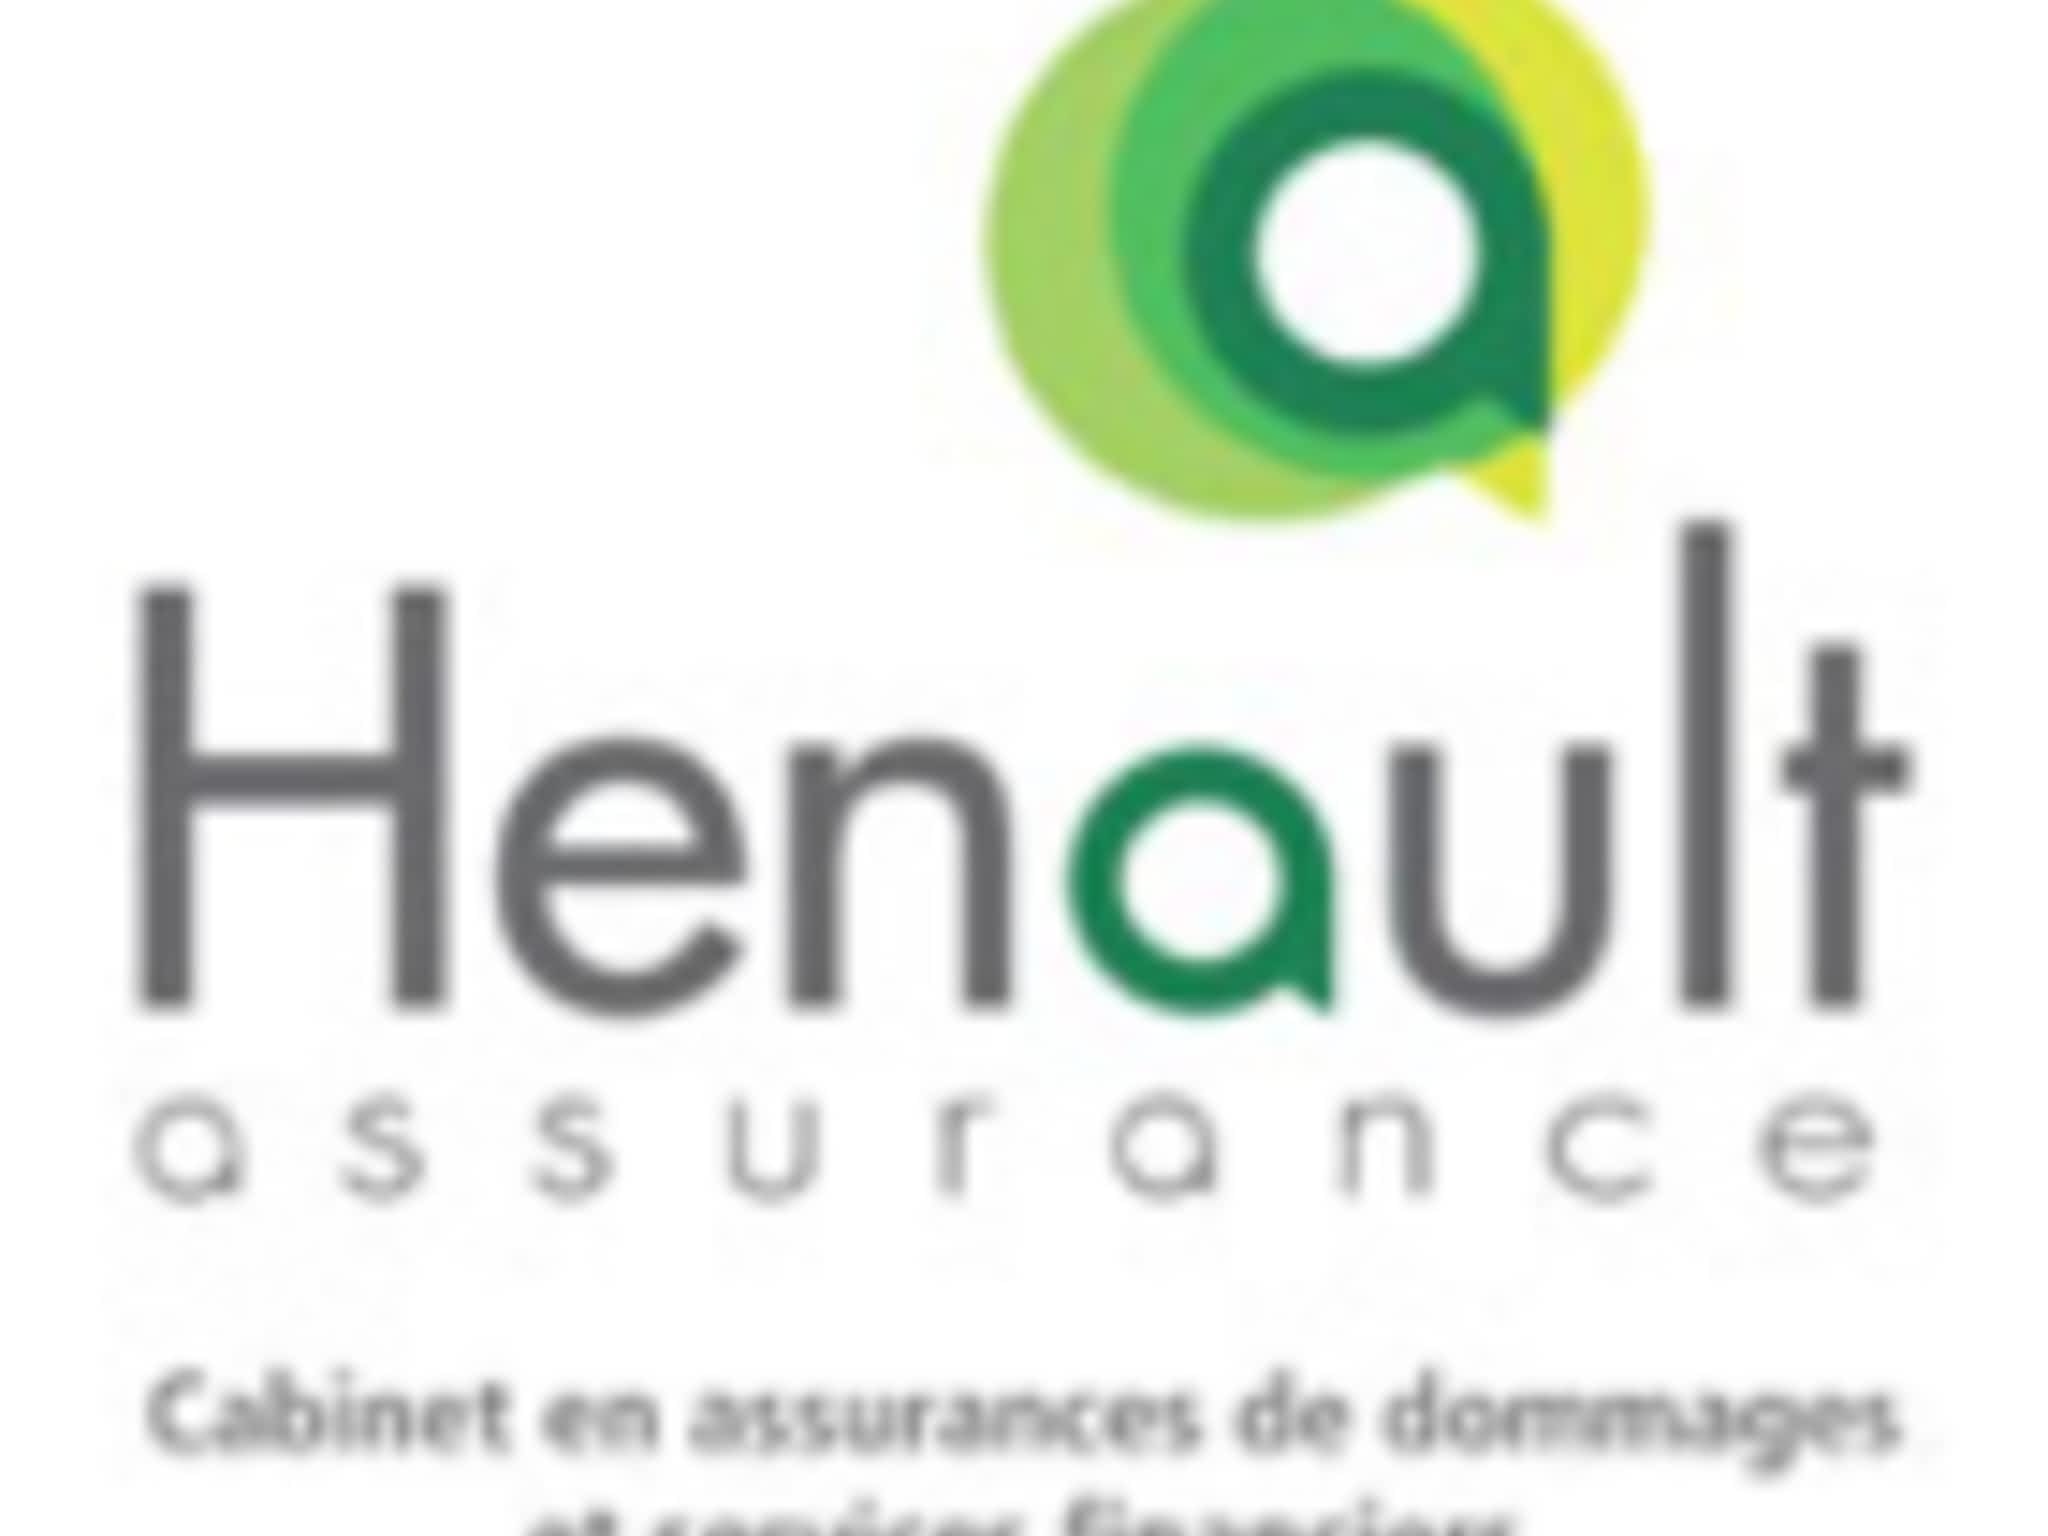 photo Hénault Assurance Inc